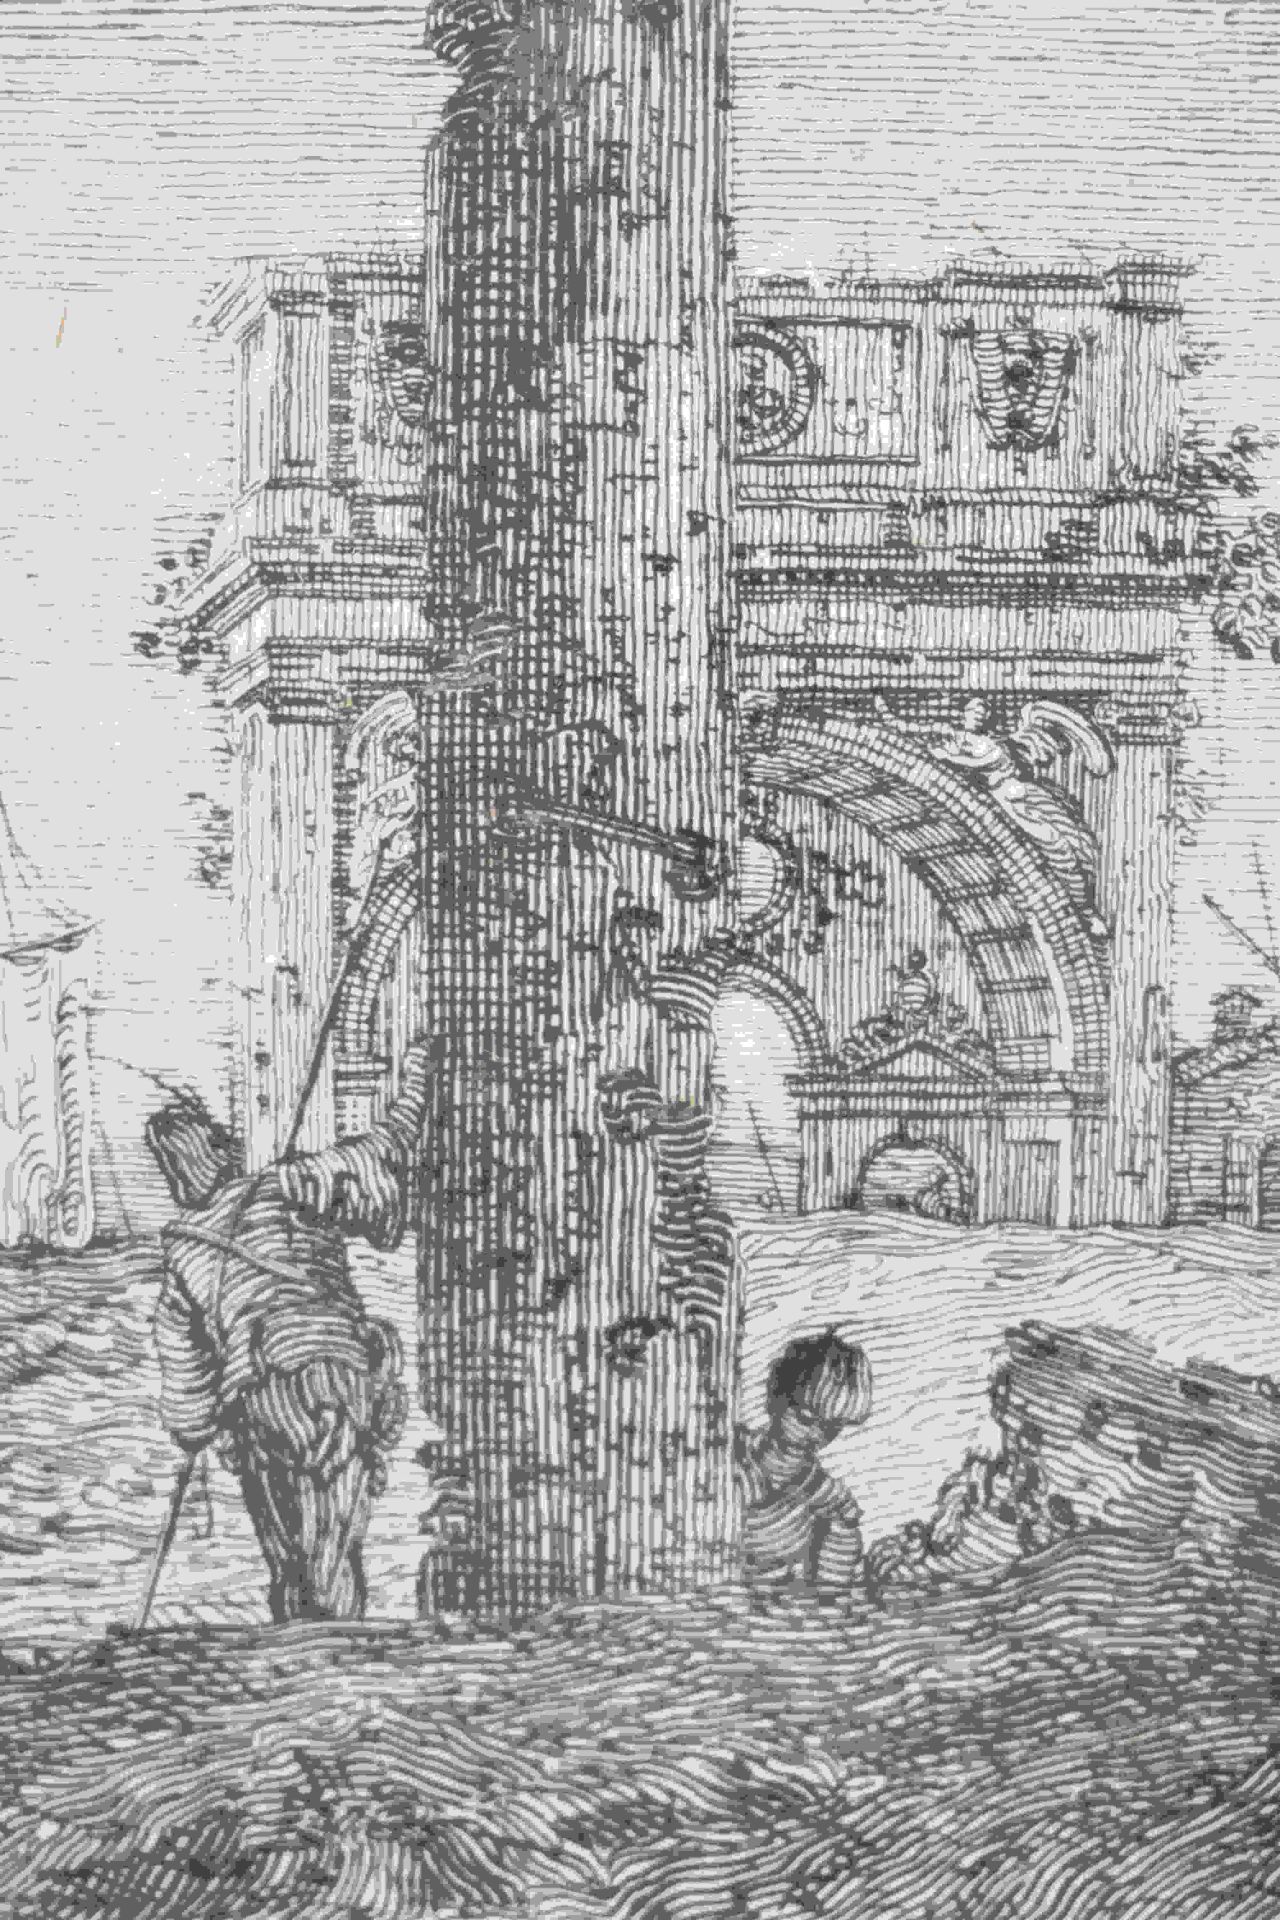 Canal, Giovanni Antonio, gen. Canaletto: Il portico con la lanterna - Bild 21 aus 24